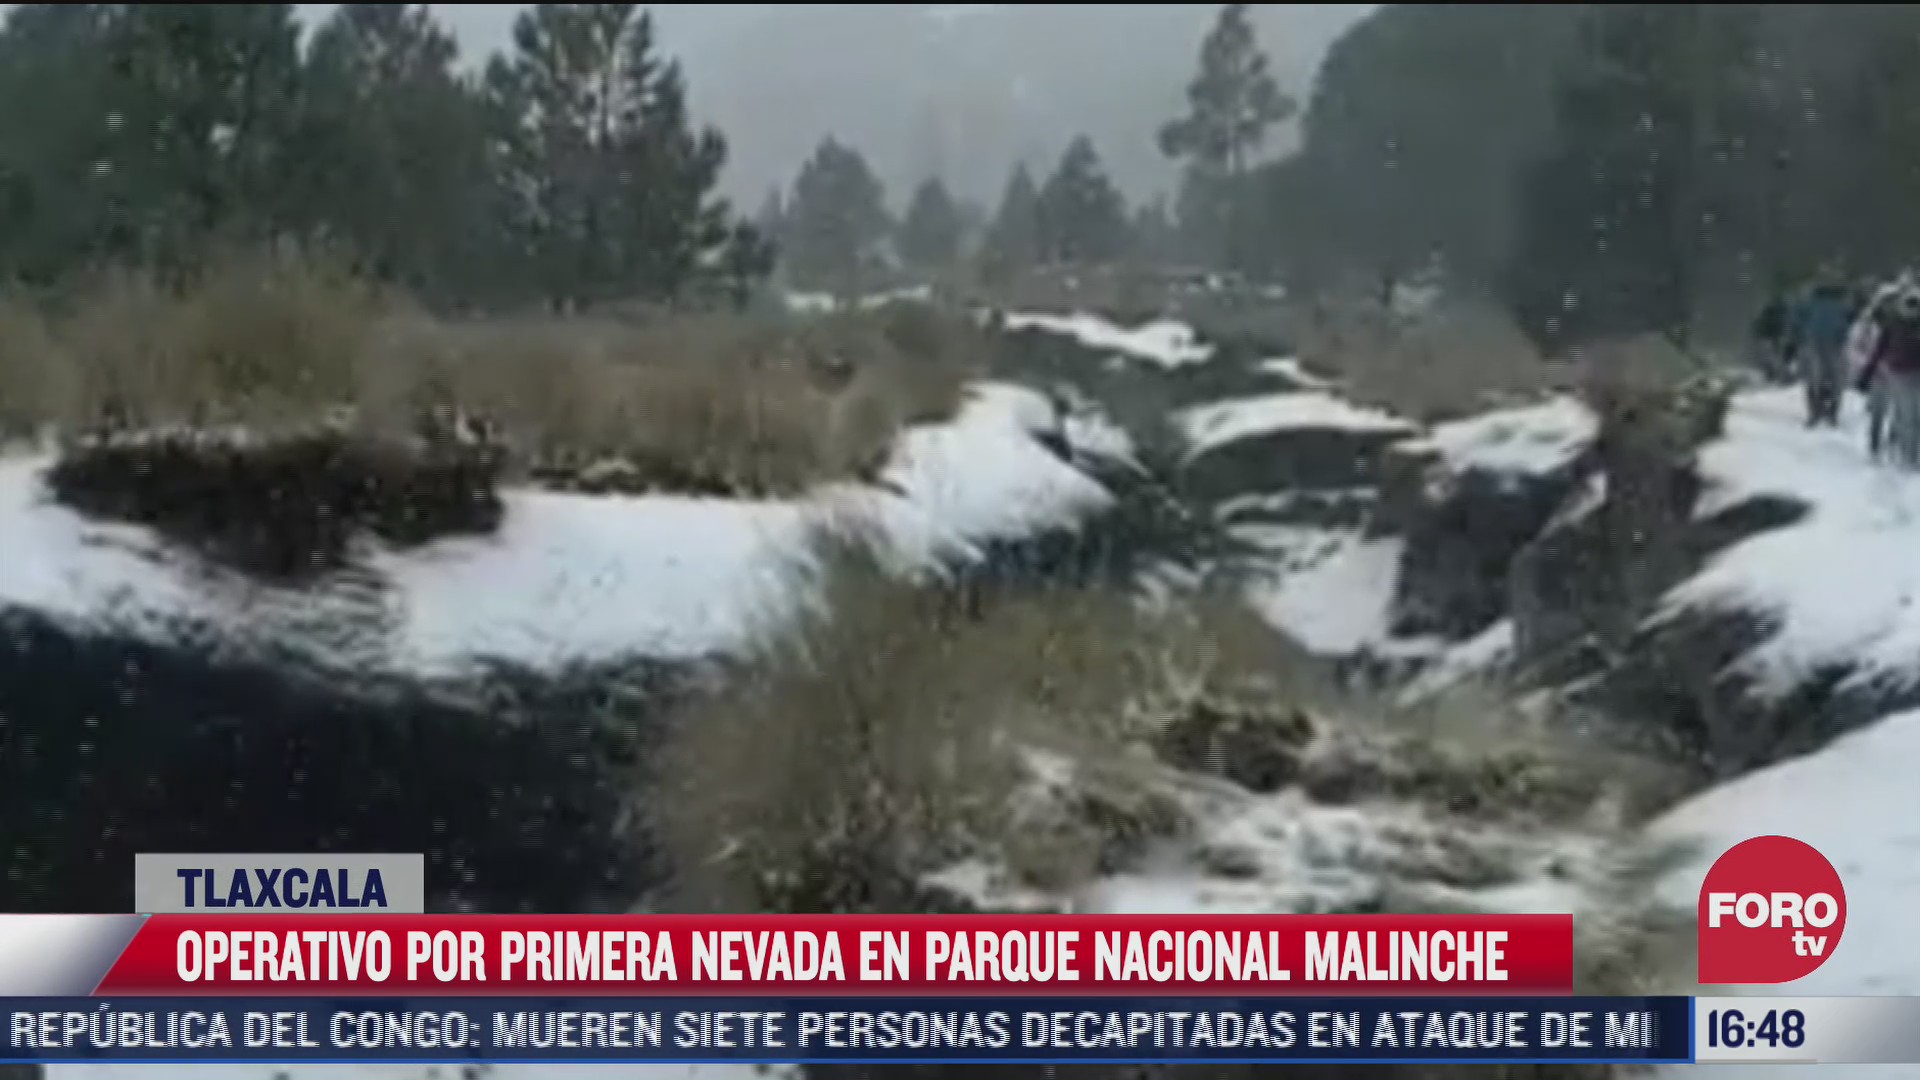 se registra la primera nevada en el parque nacional la malinche en tlaxcala